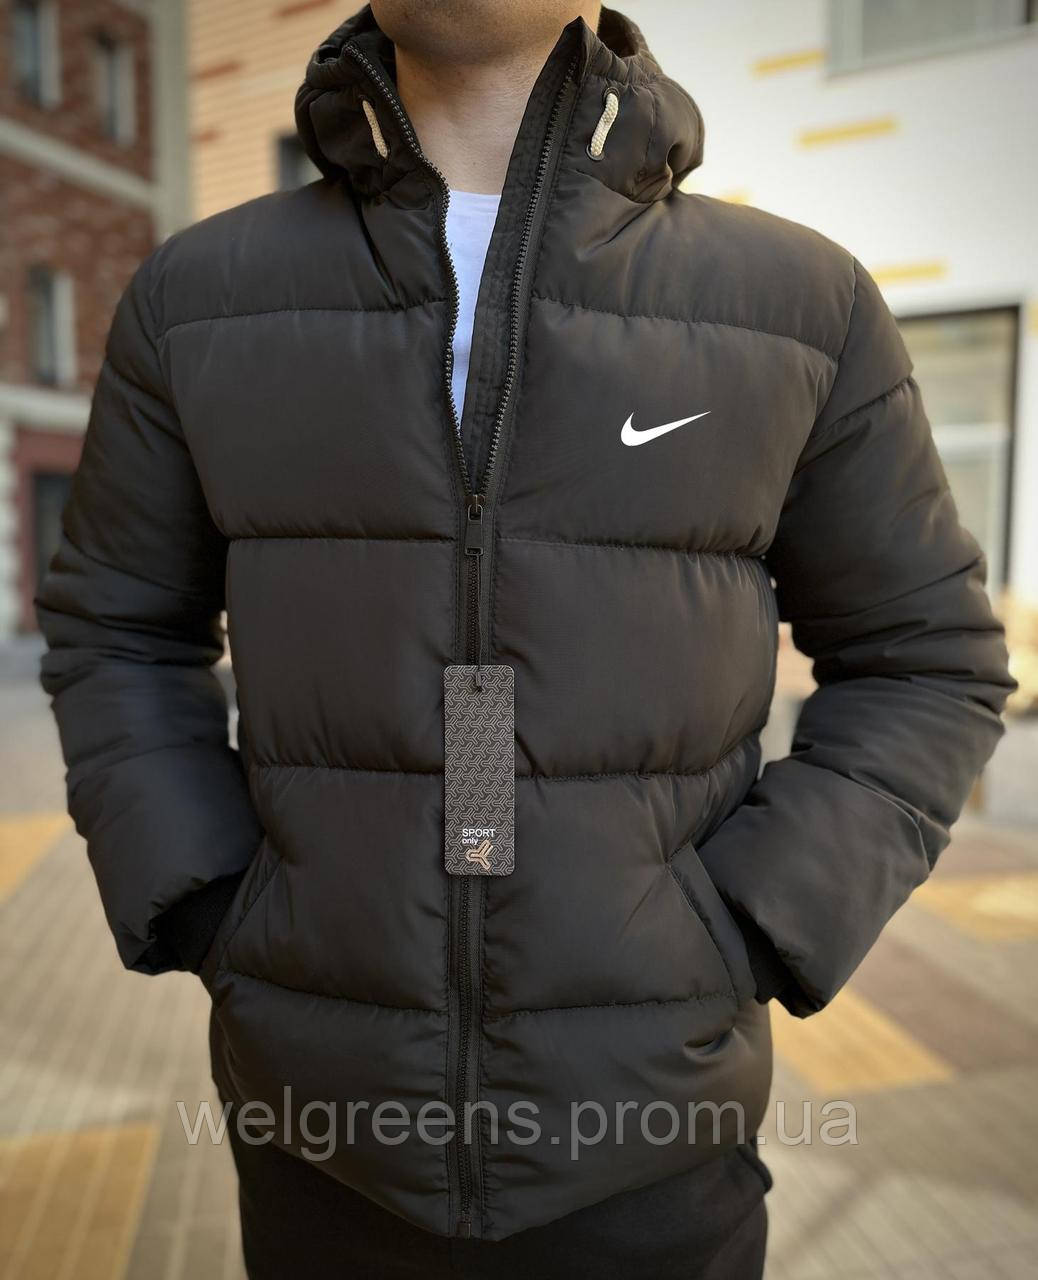 Чоловічий зимовий пуховик тепла зимова куртка стильний чоловічий пуховик чорний спортивний пуховик Nike